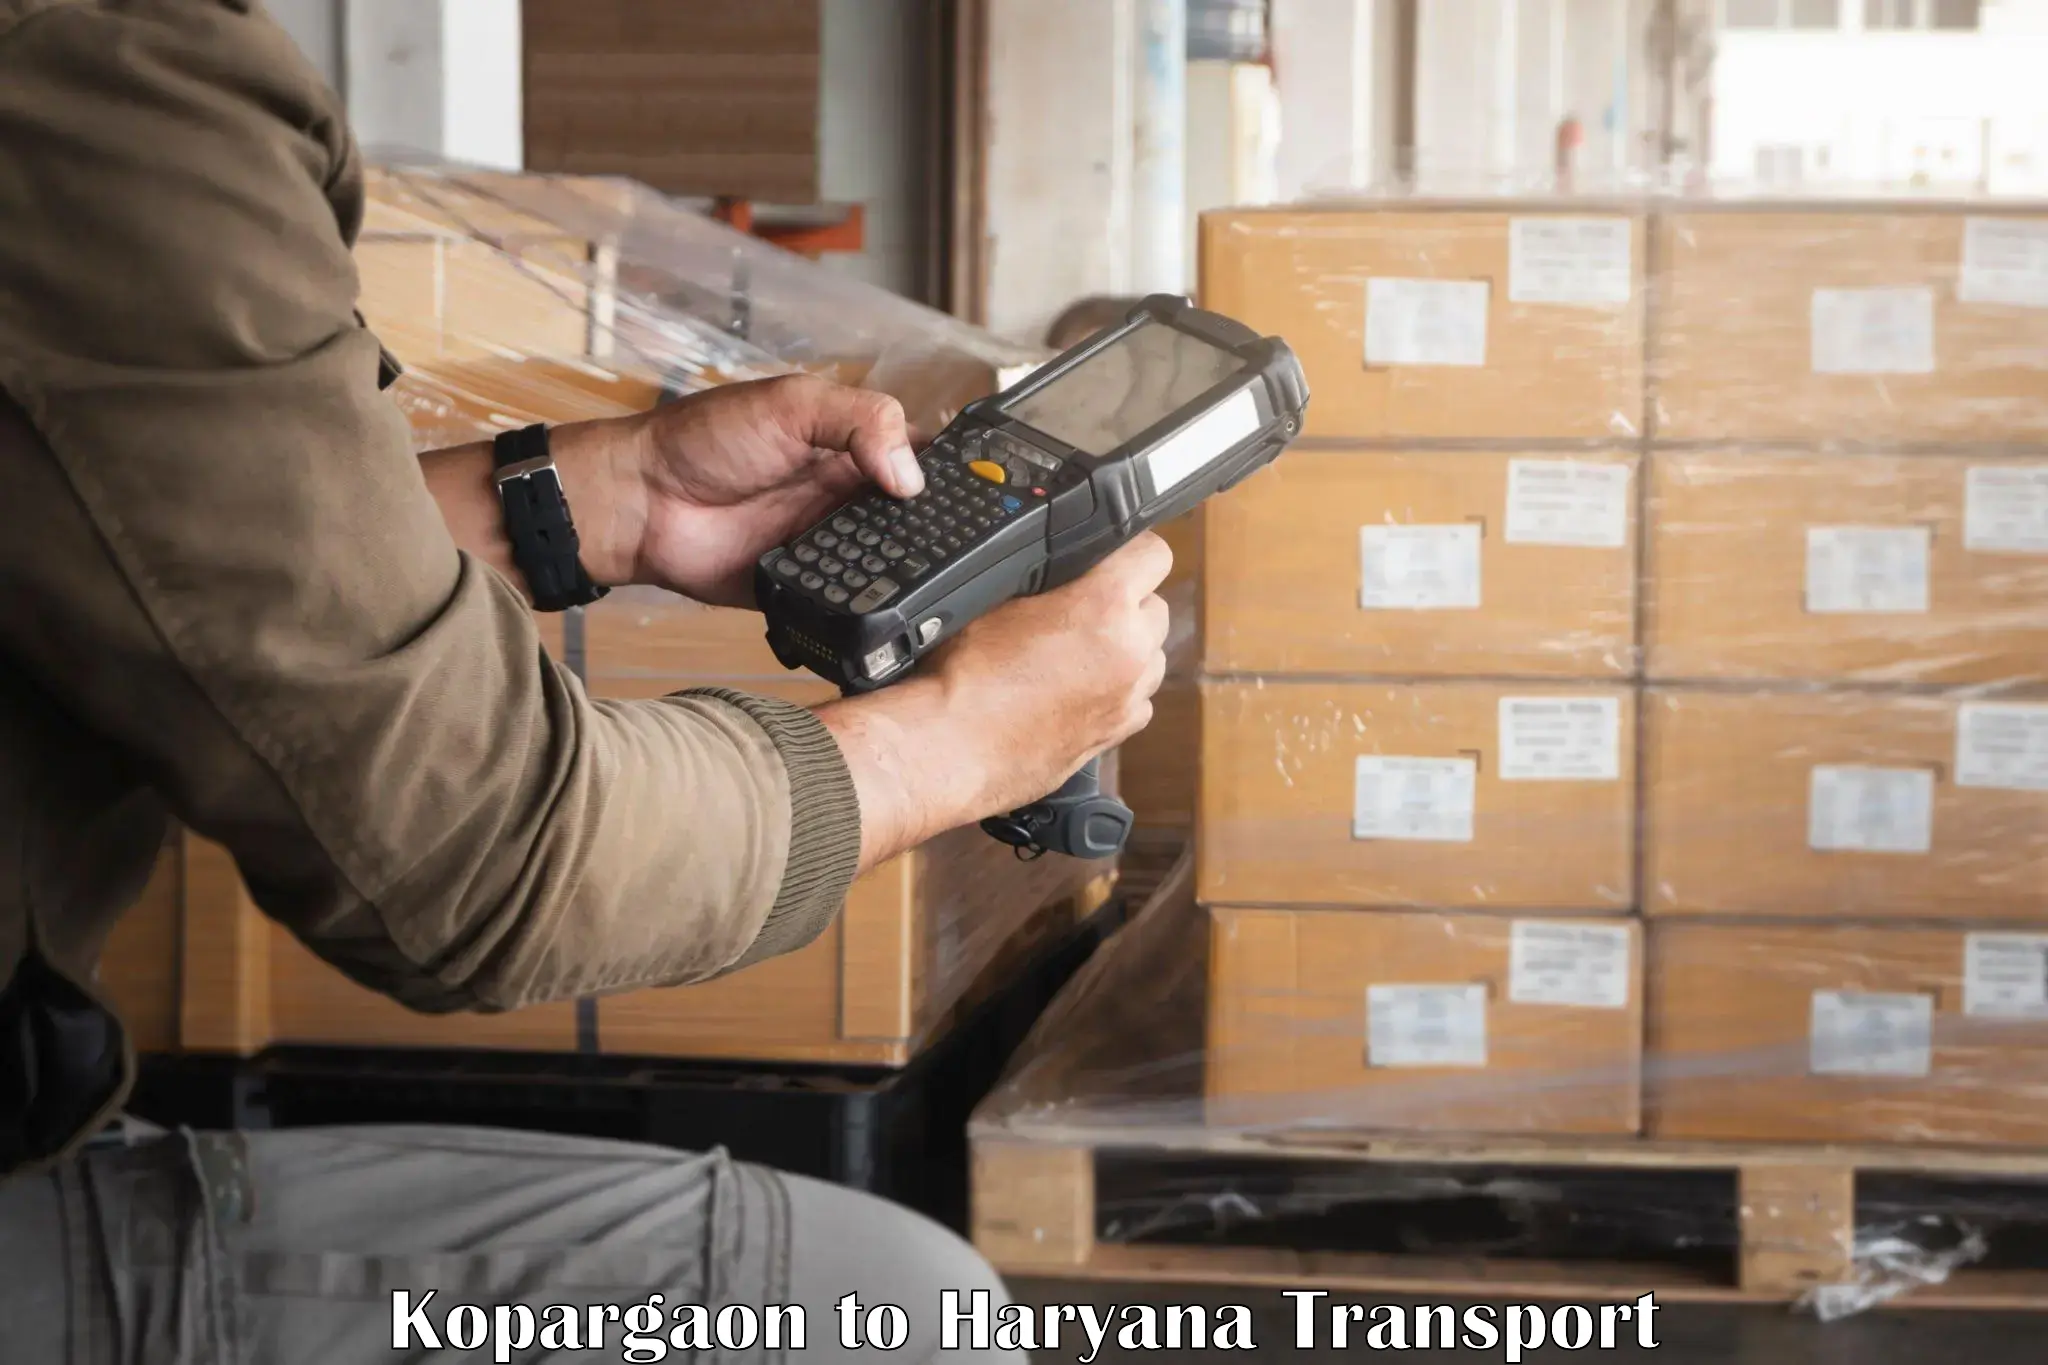 Online transport booking Kopargaon to Haryana